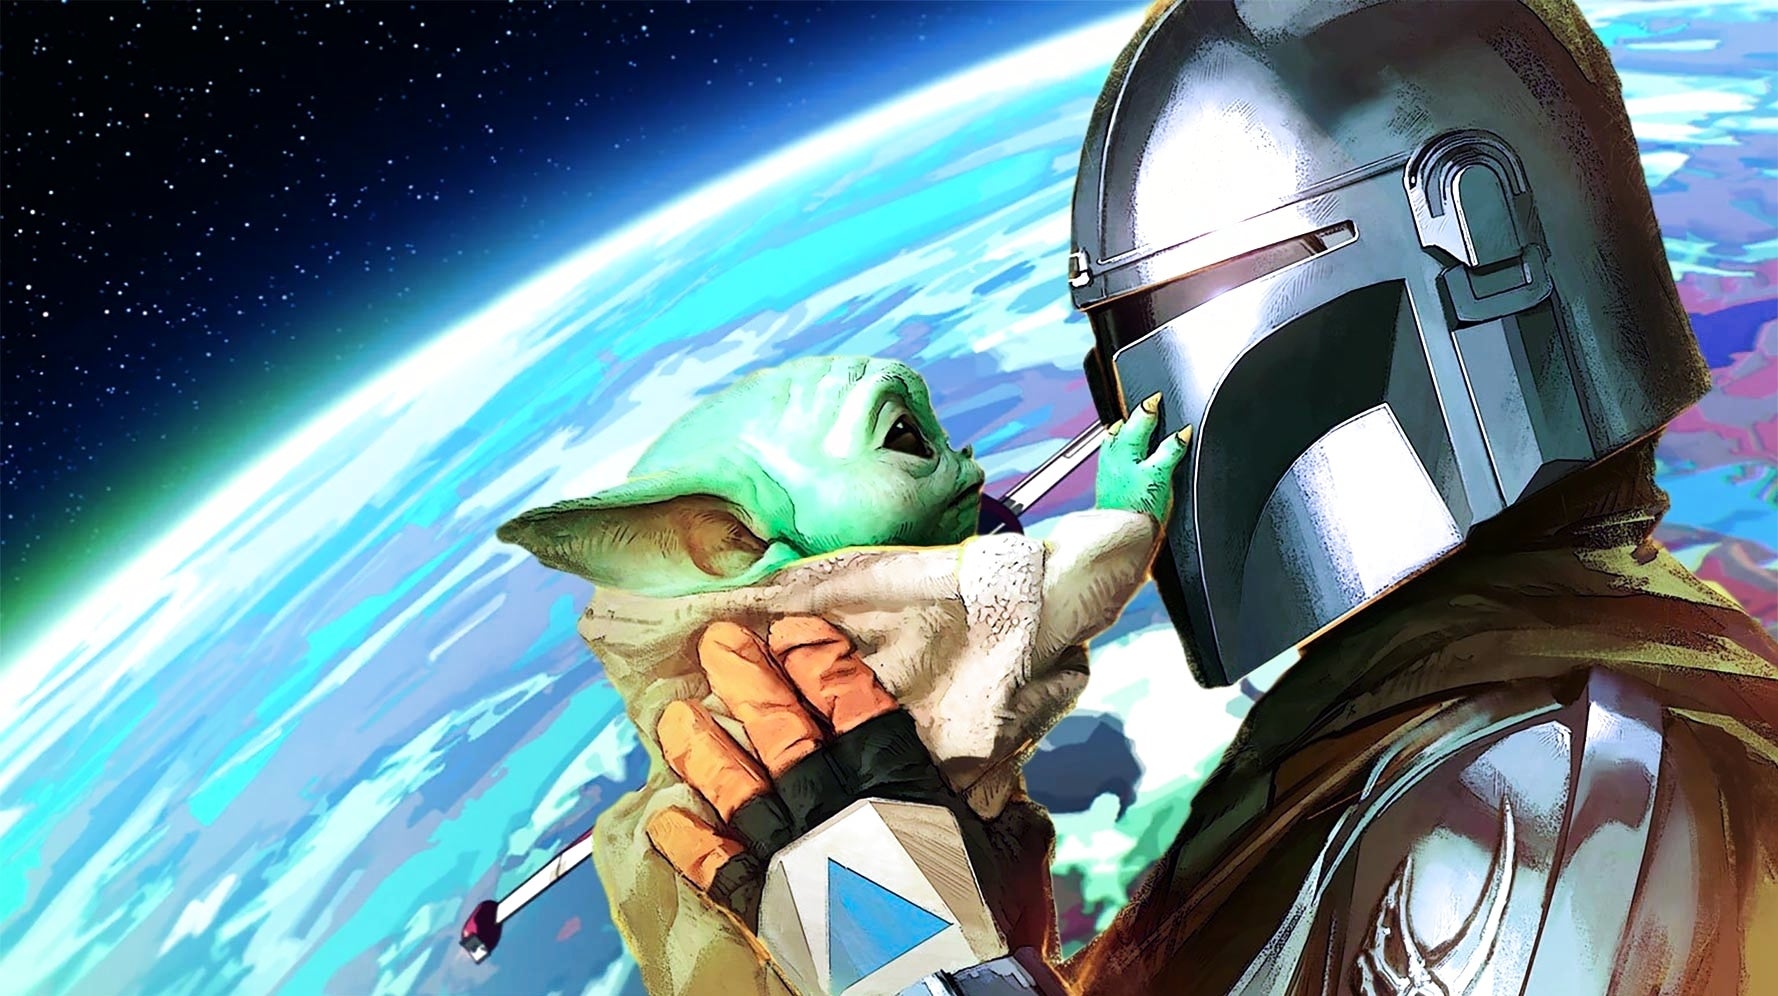 Bilder zu Quantic Dreams Star-Wars-Spiel soll mehr Action bieten als ihre bisherigen Titel